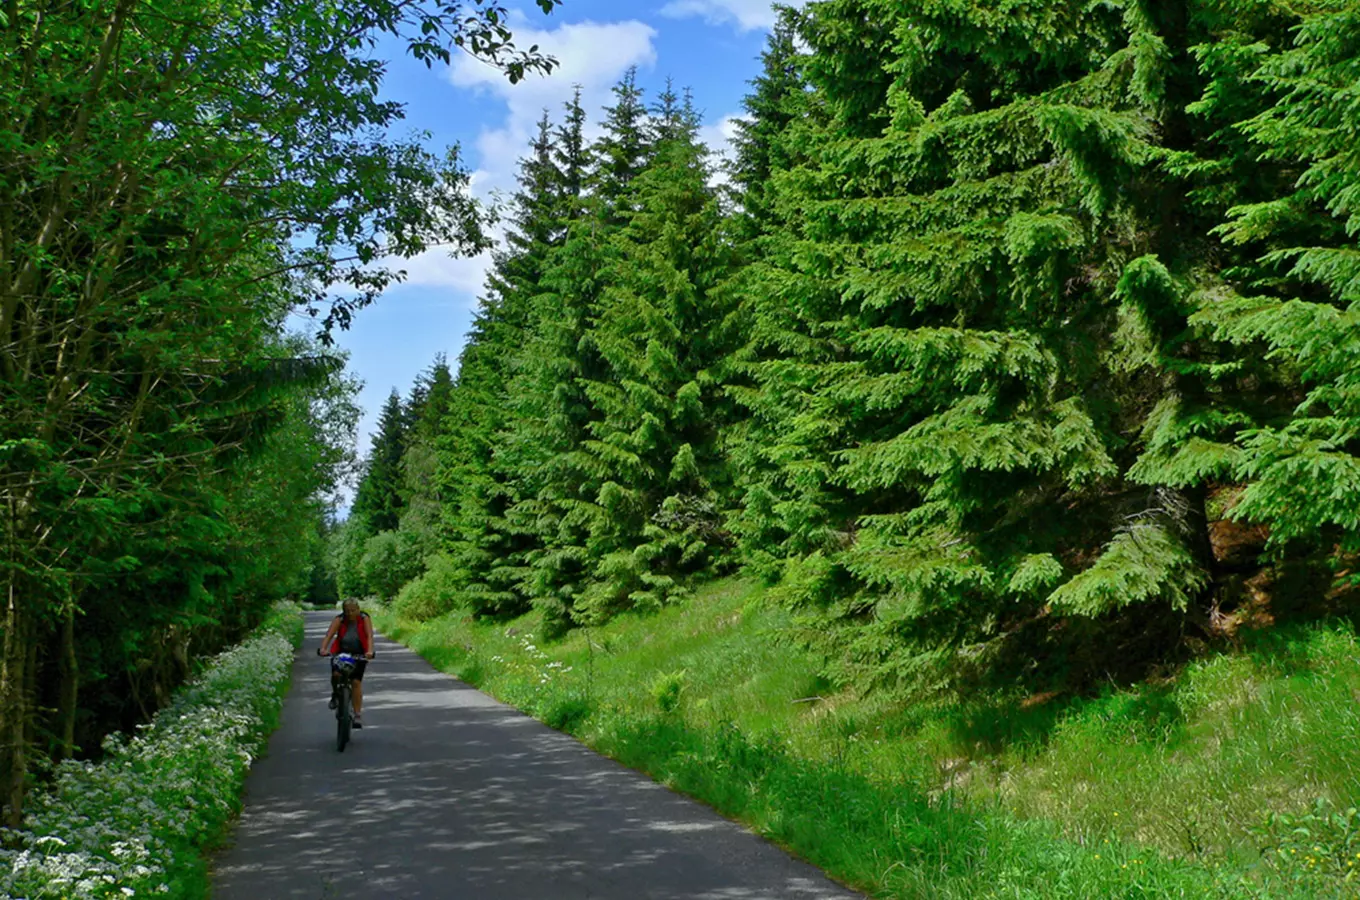 Letní sezona v Krkonoších: 10 tipů pro jízdu na kole i koloběžce